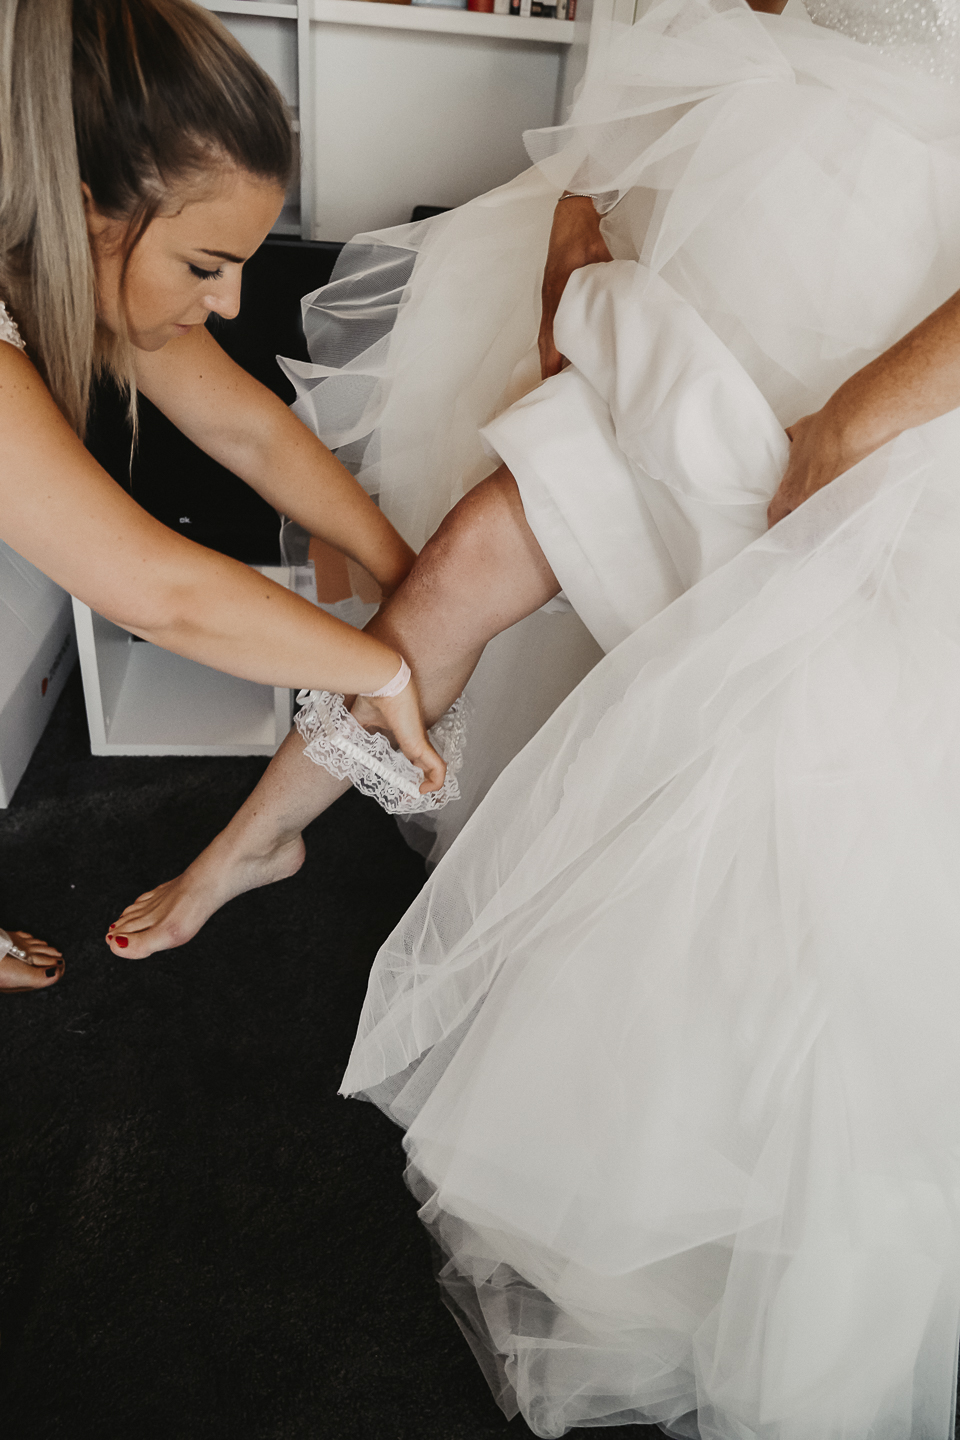 Die Braut wird von ihrer Trauzeugin gerichtet und das Hochzeitskleid und Hochzeitsaccessoires angezogen in ihrem zu Hause. Die Corsage wird festgezogen und das Brautband übergezogen.